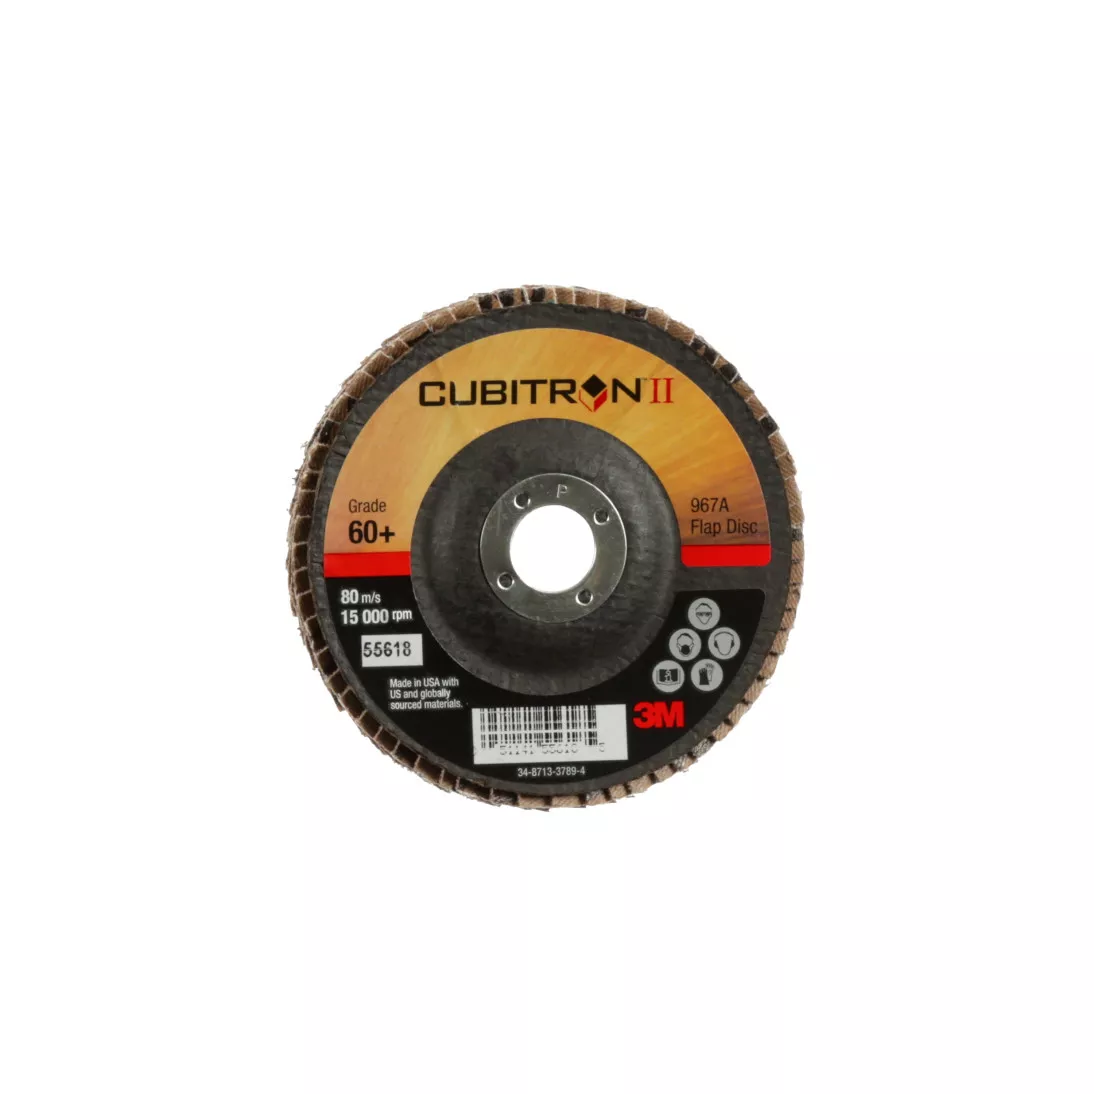 3M™ Cubitron™ II Flap Disc 967A, 60+, T29, 4 in x 5/8 in, 10 ea/Case